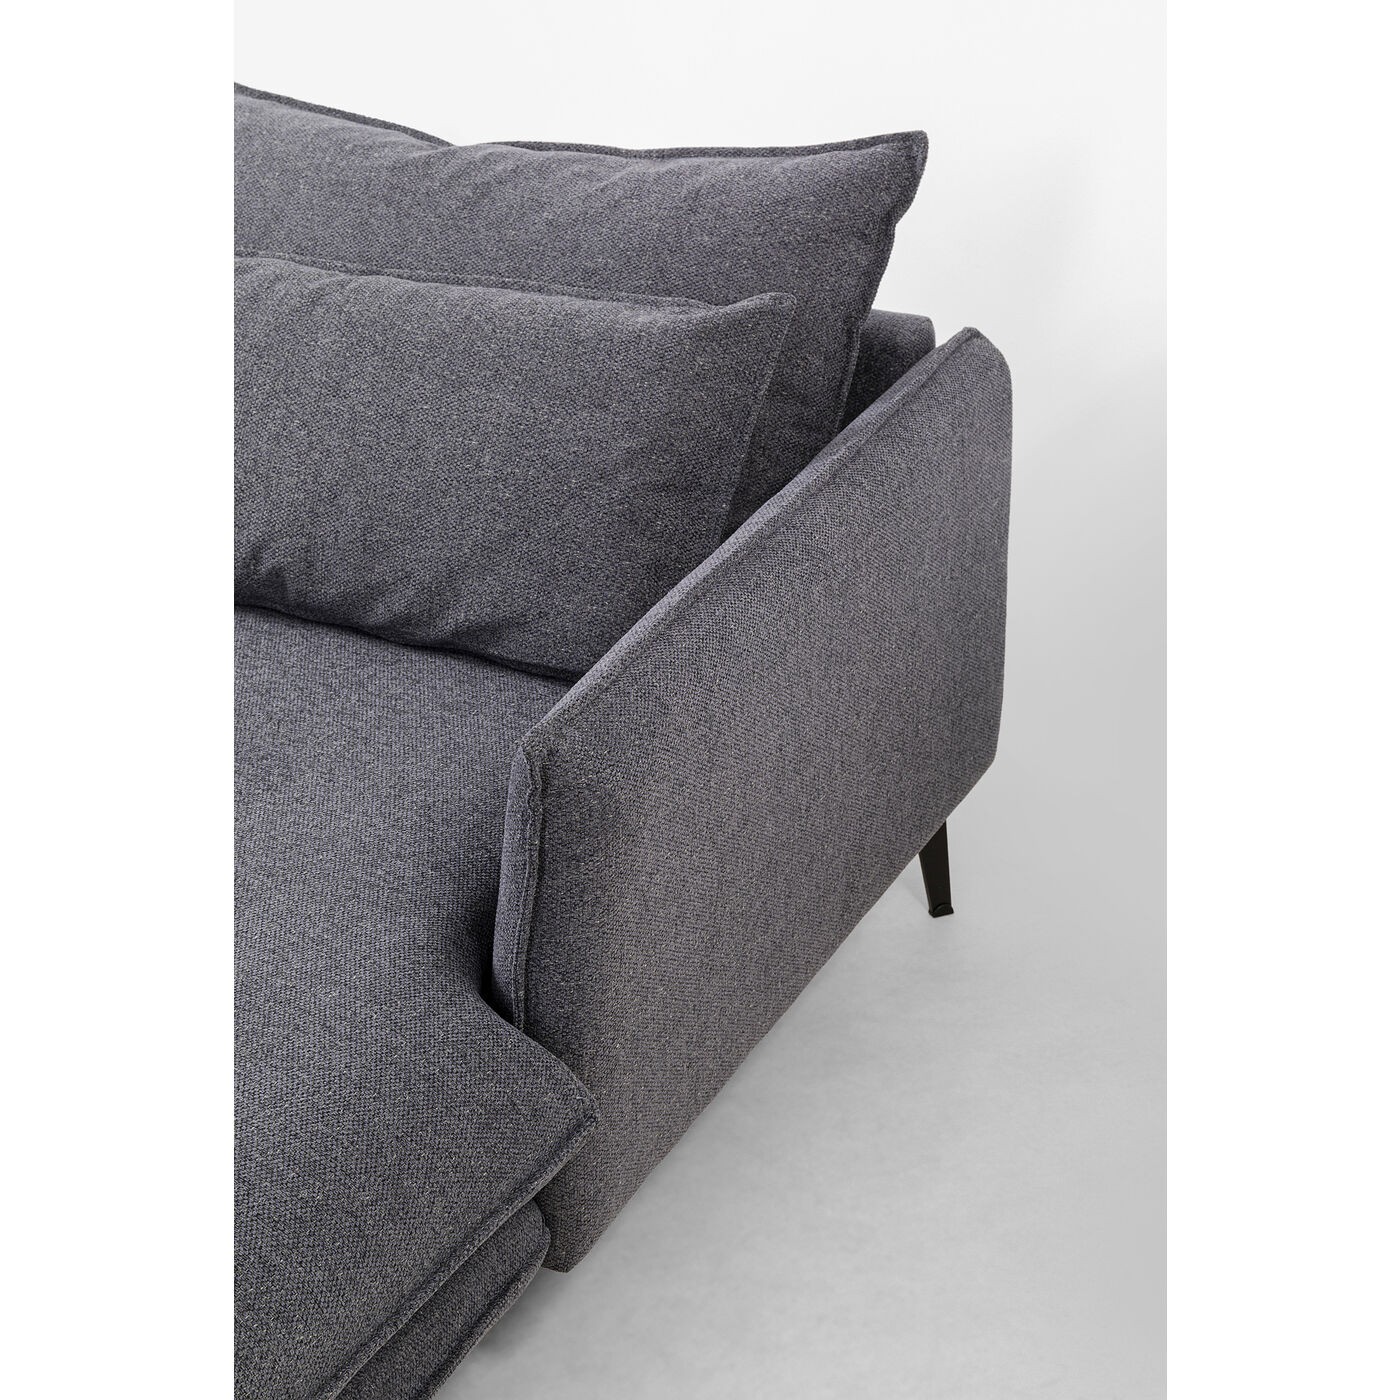 Canapé d'angle Monza gris droite Kare Design